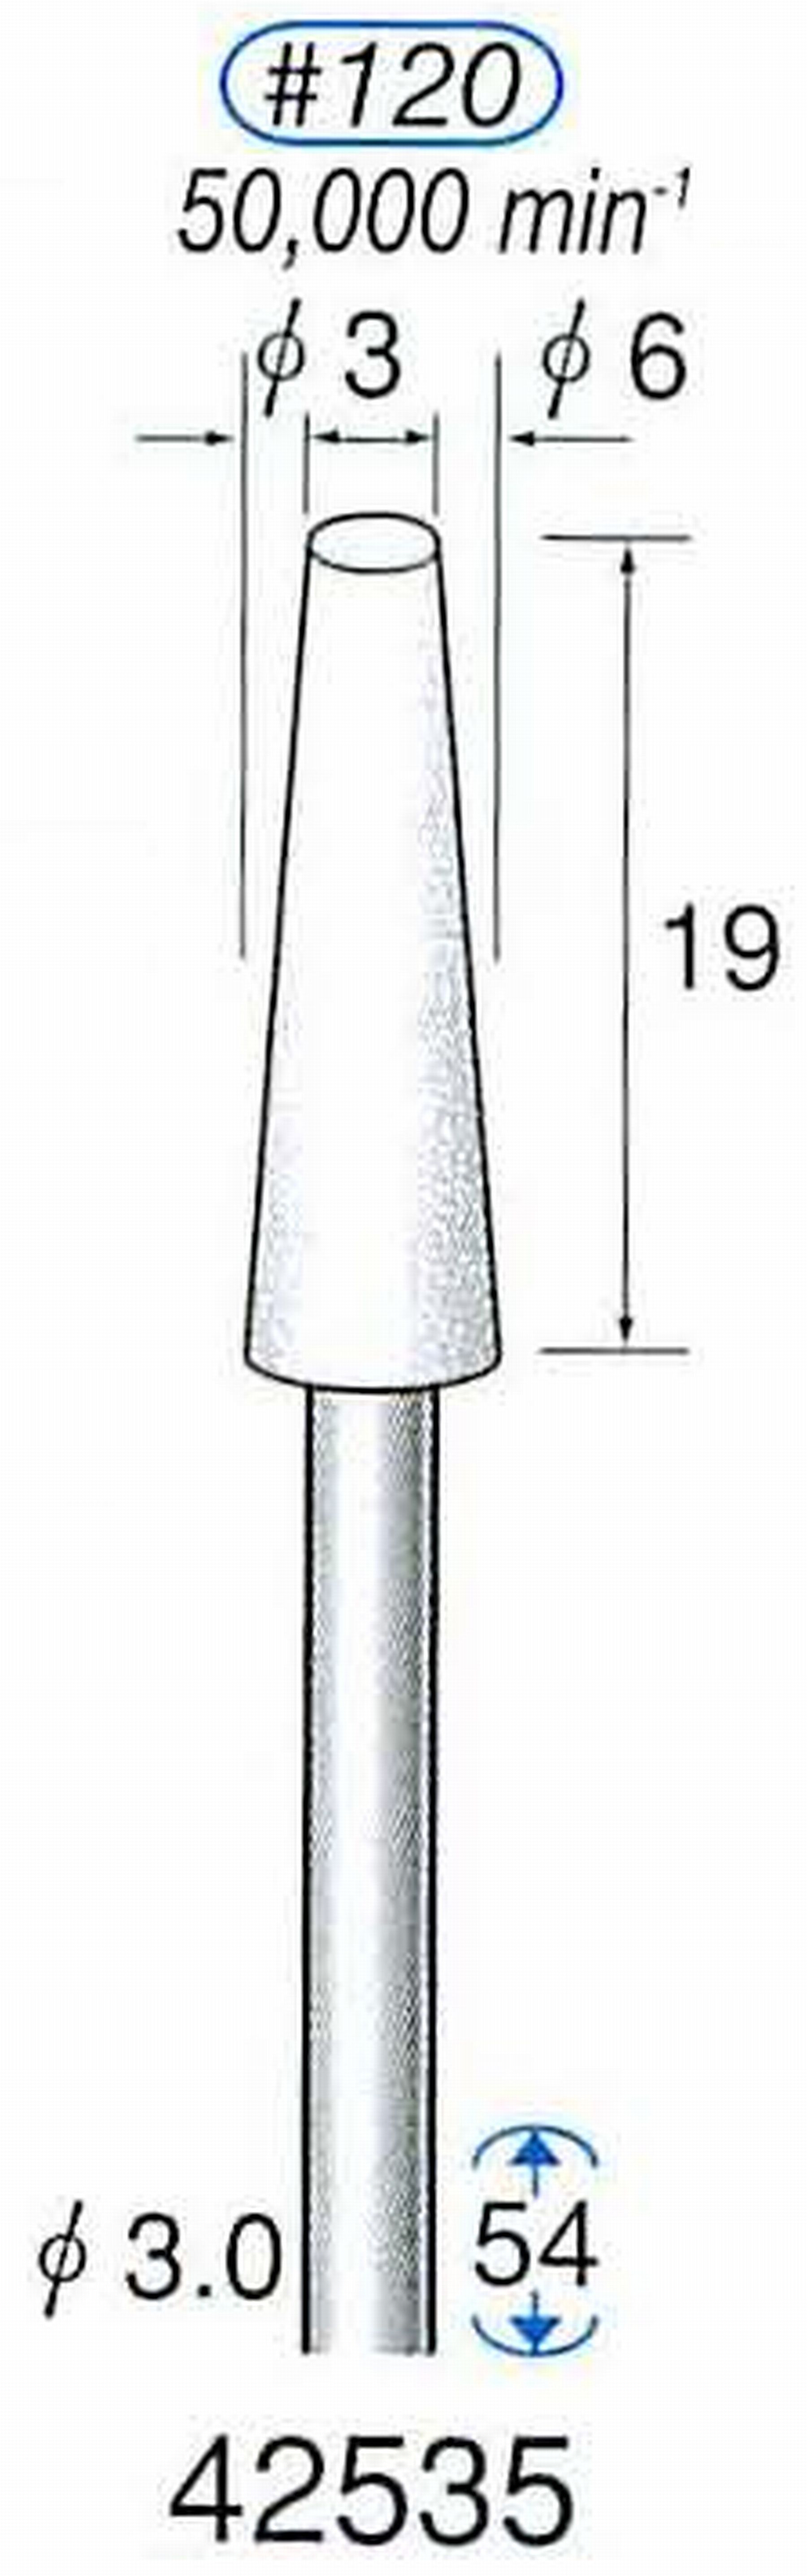 ナカニシ/NAKANISHI 軸付砥石(WA砥粒) 一般研削用 軸径(シャンク) φ3.0mm 42535